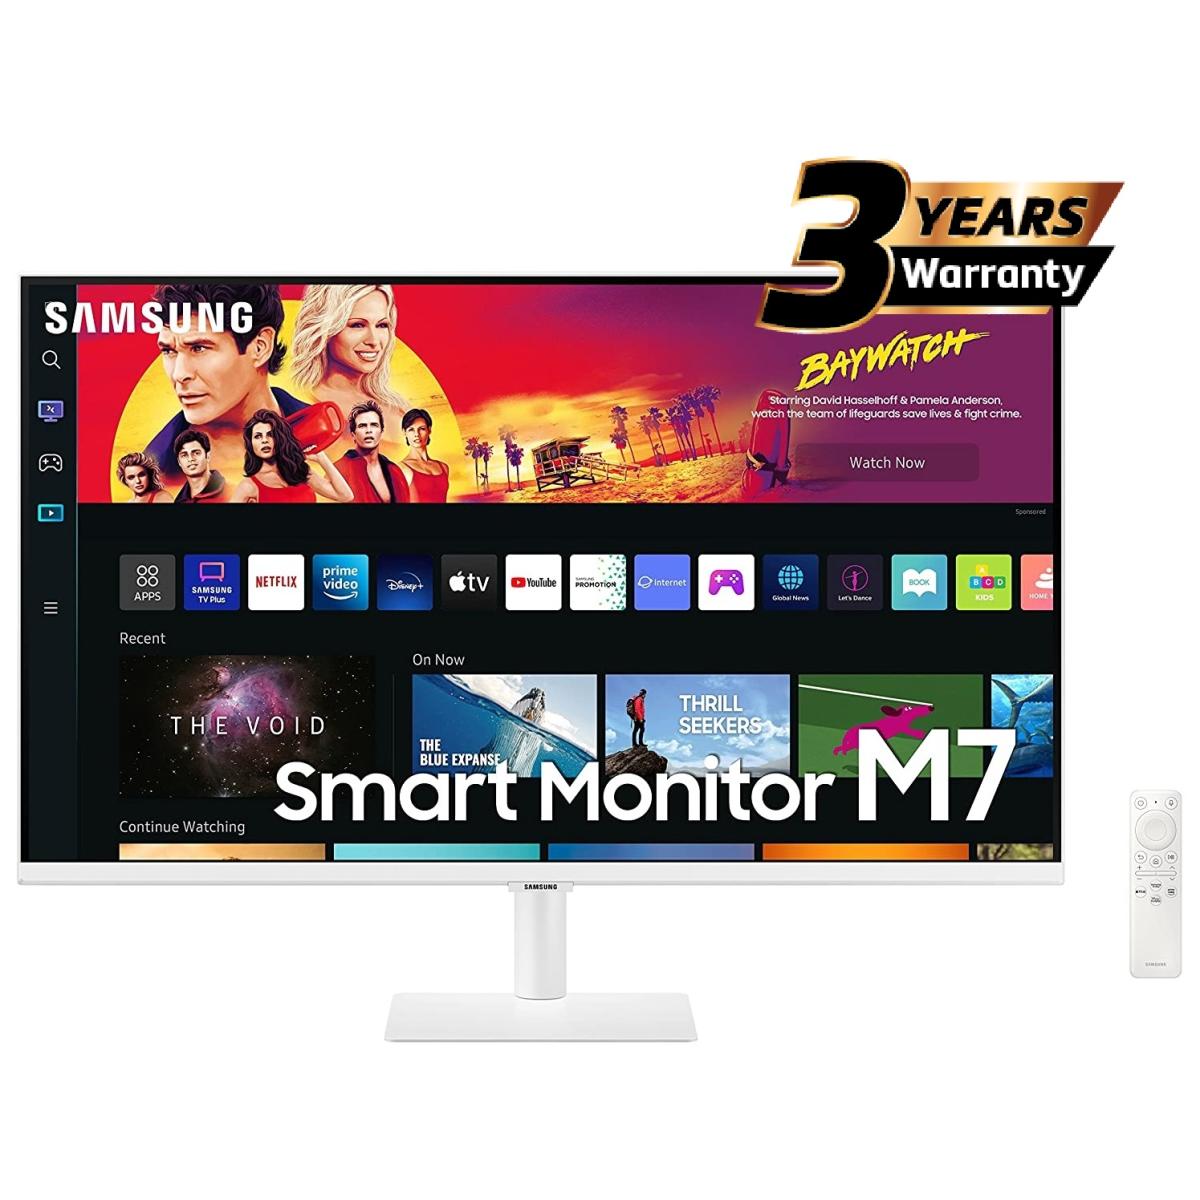 Samsung 32" Smart Monitor - M7 White